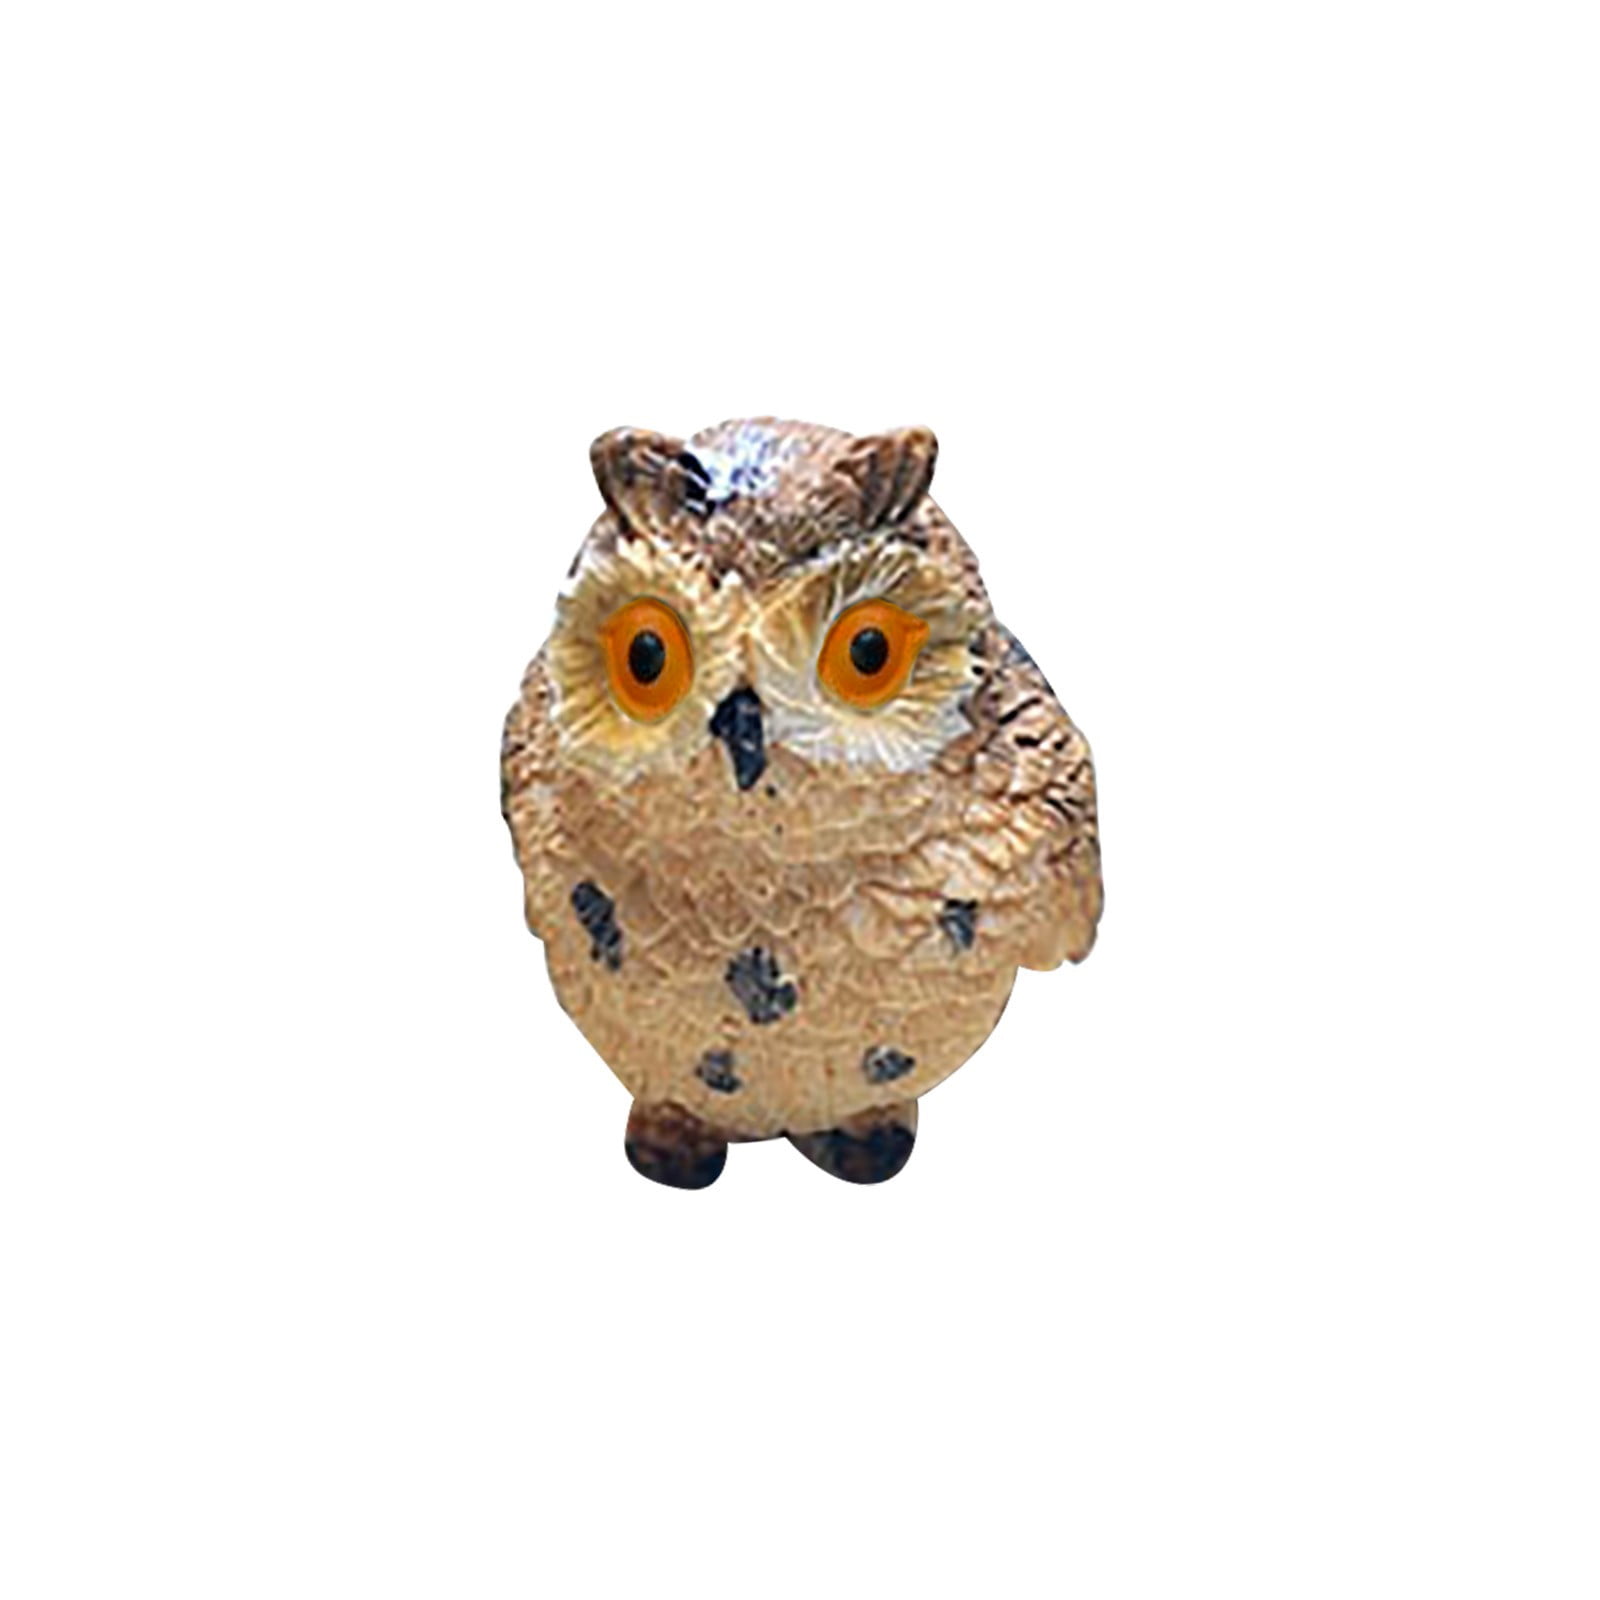 Gardening Micro-Landscape Mini Simulated Animal Cute Owl Small Ornaments Decora 